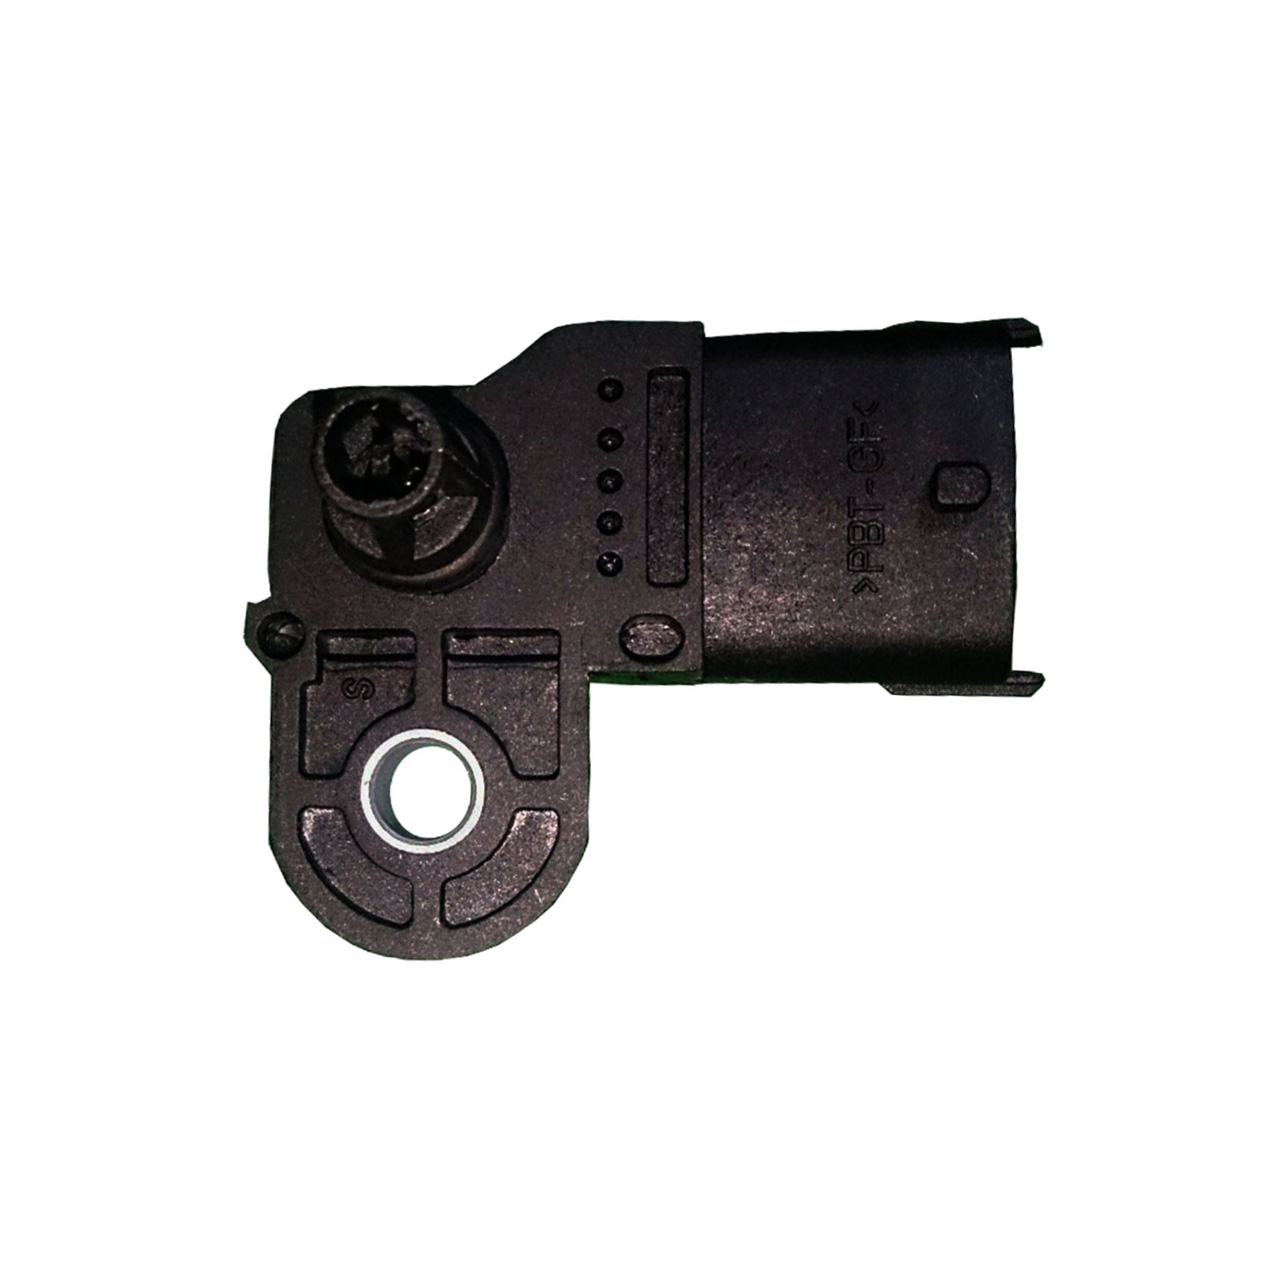 سنسور مپ مدل 3611080-EG01 مناسب برای گریت وال ولکس C30